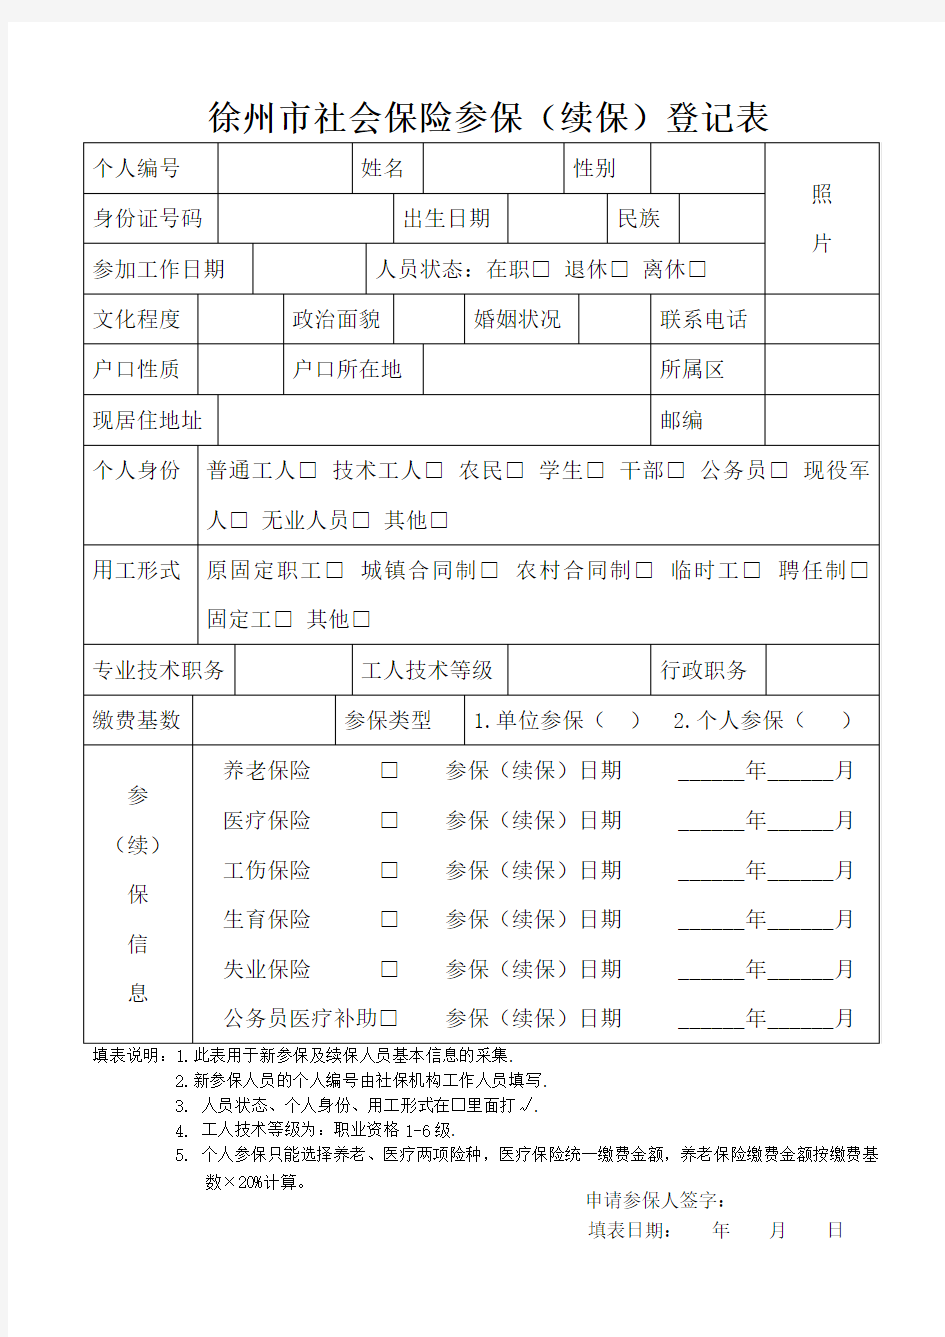 徐州市社会保险参保(续保)登记表